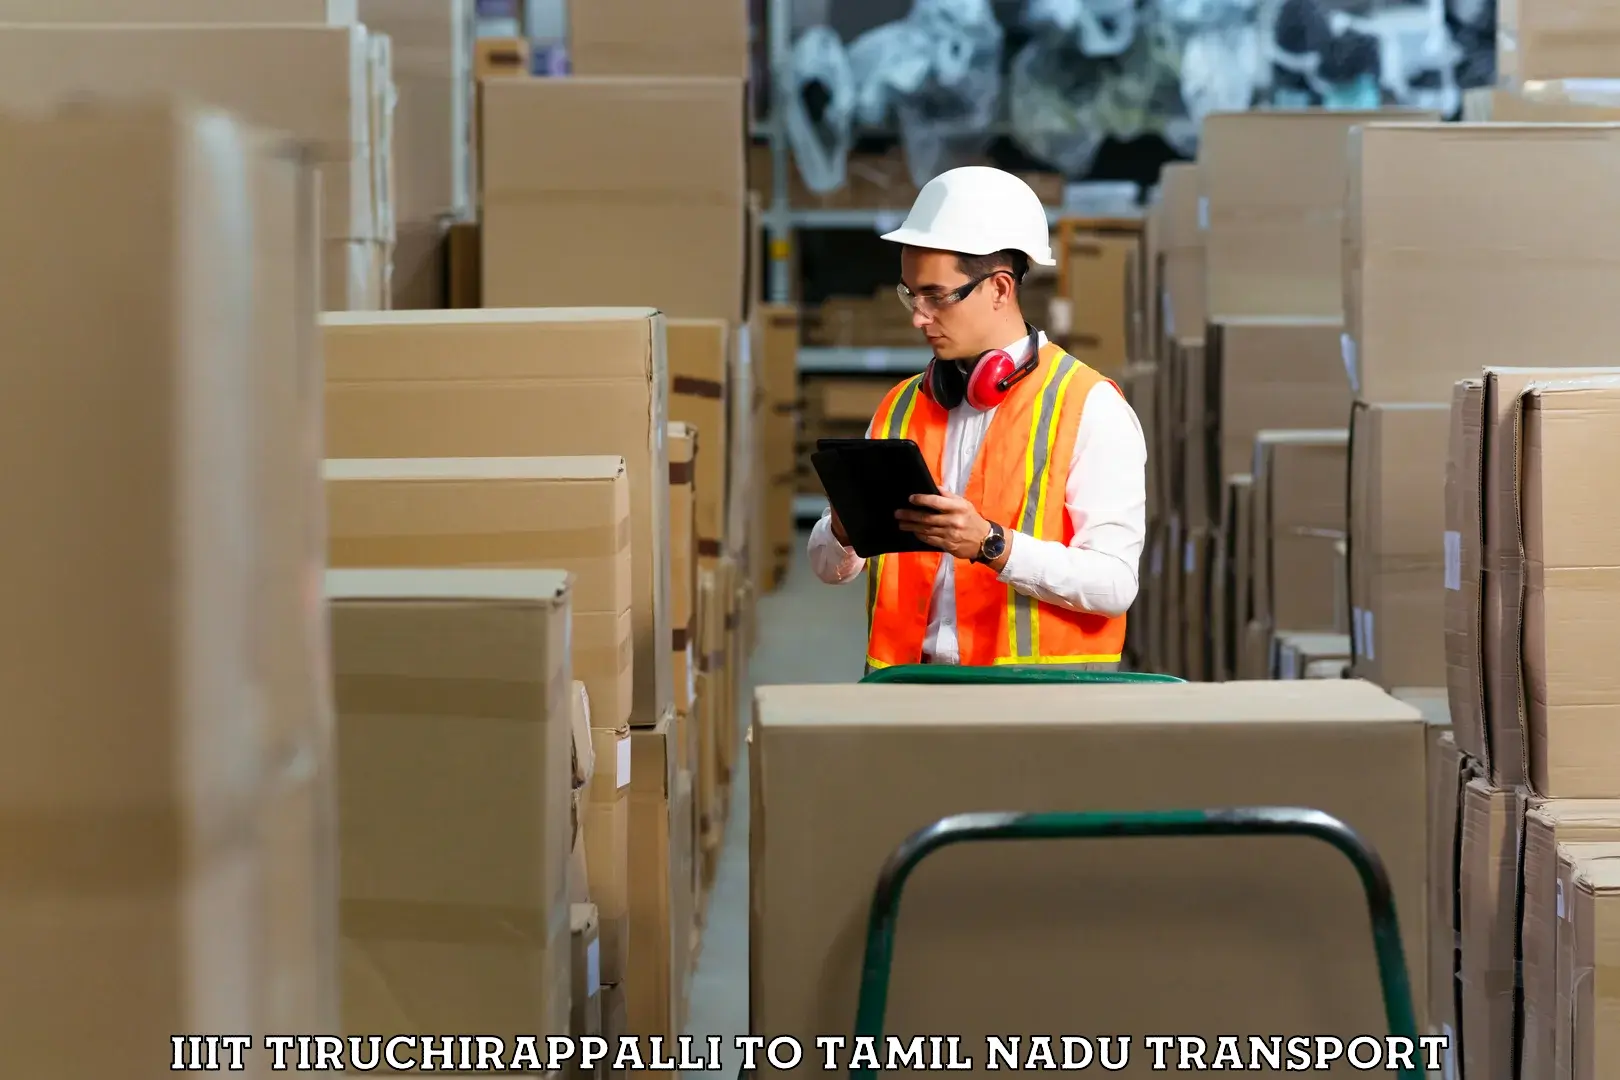 Online transport booking IIIT Tiruchirappalli to Pennagaram